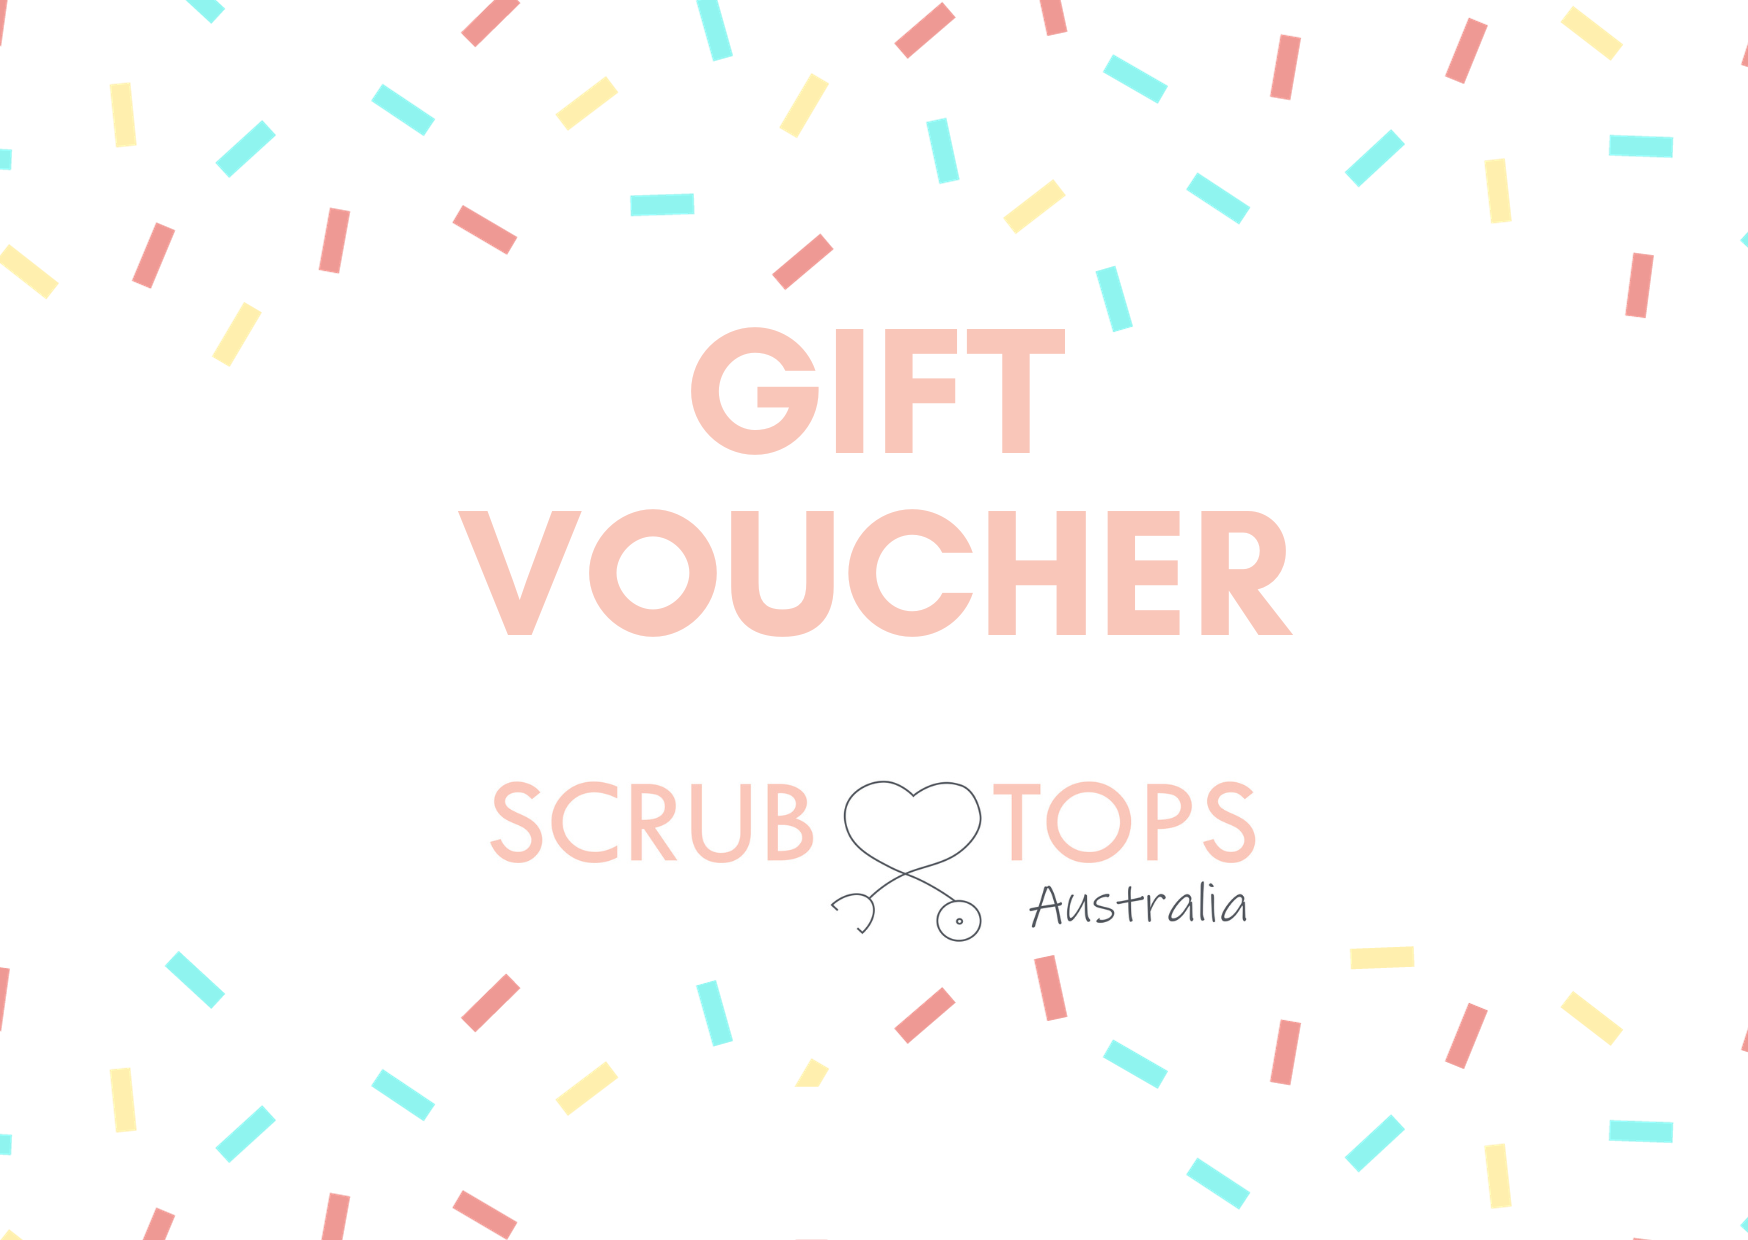 Scrub Tops Australia Gift Voucher